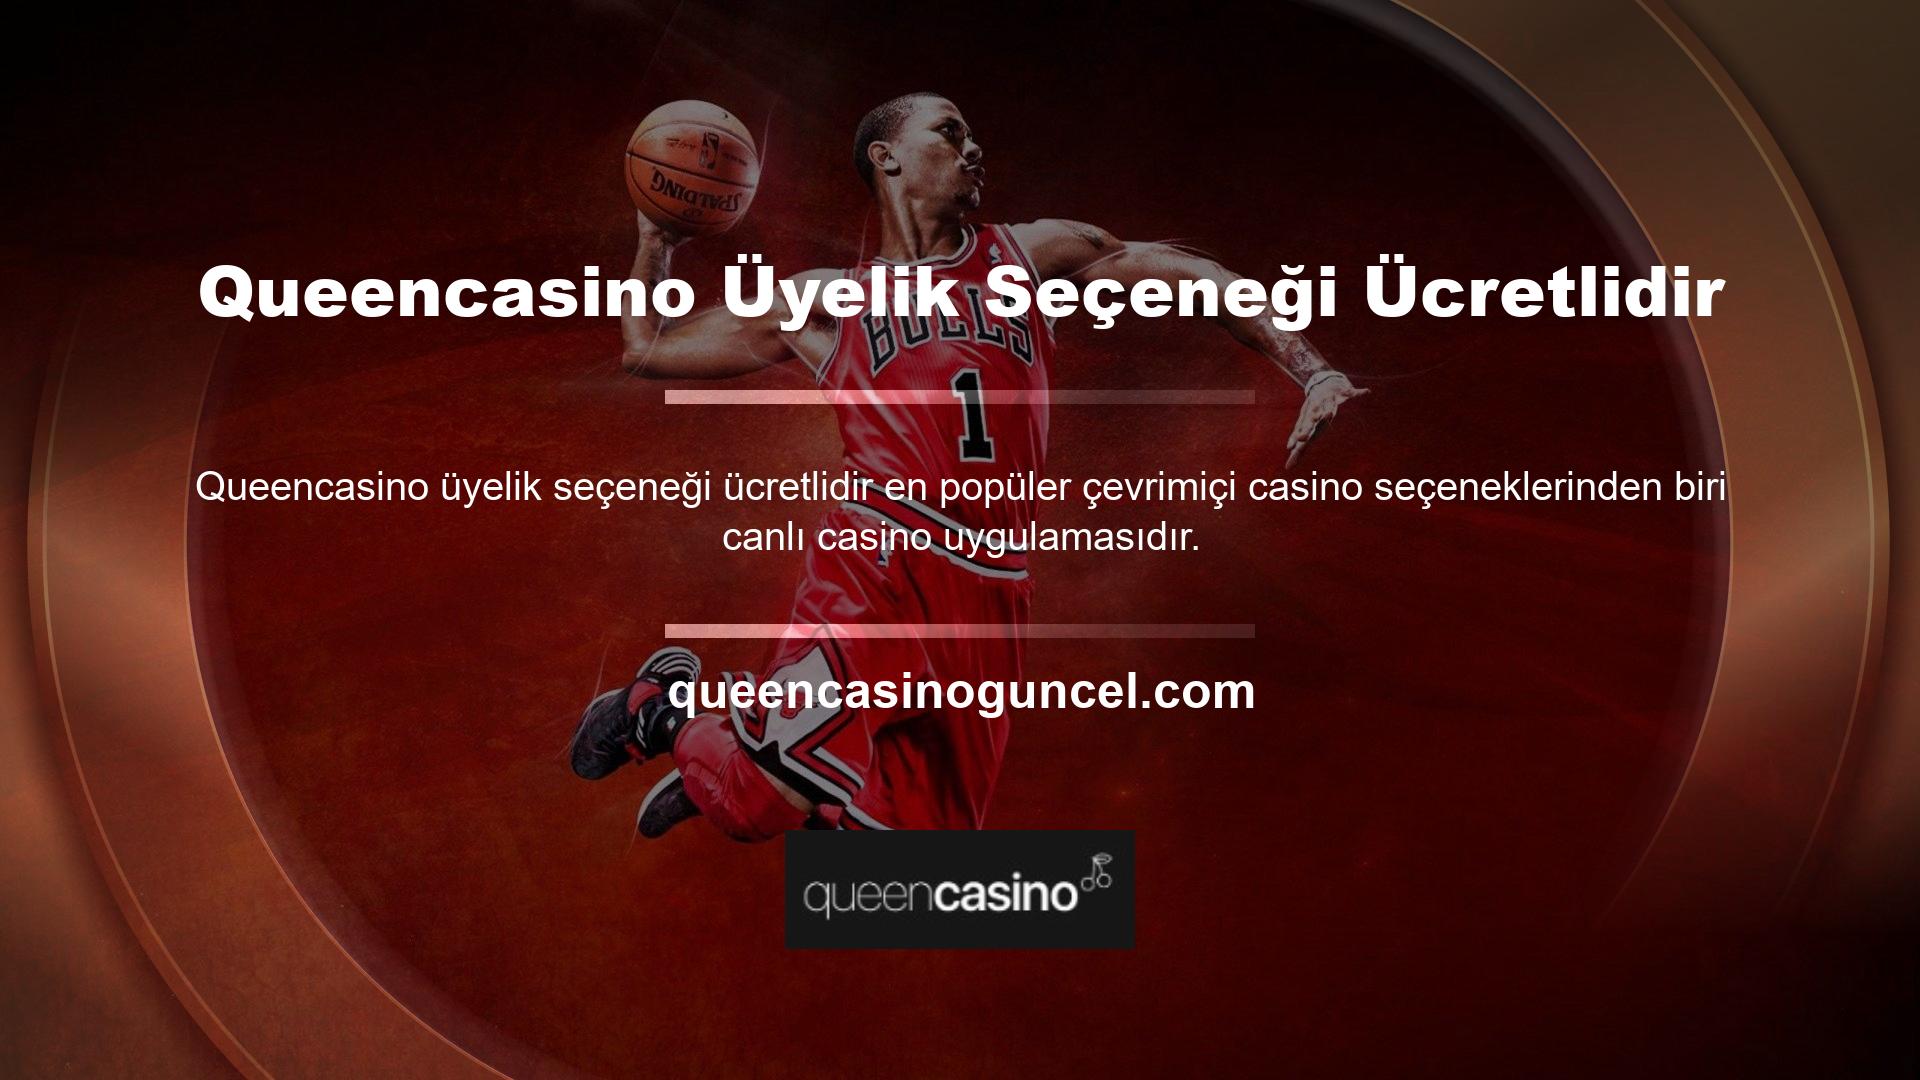 Canlı Casino uygulamasında gerçek rakipler ve krupiyelerle eşleşen oyun kategorileri bulunur